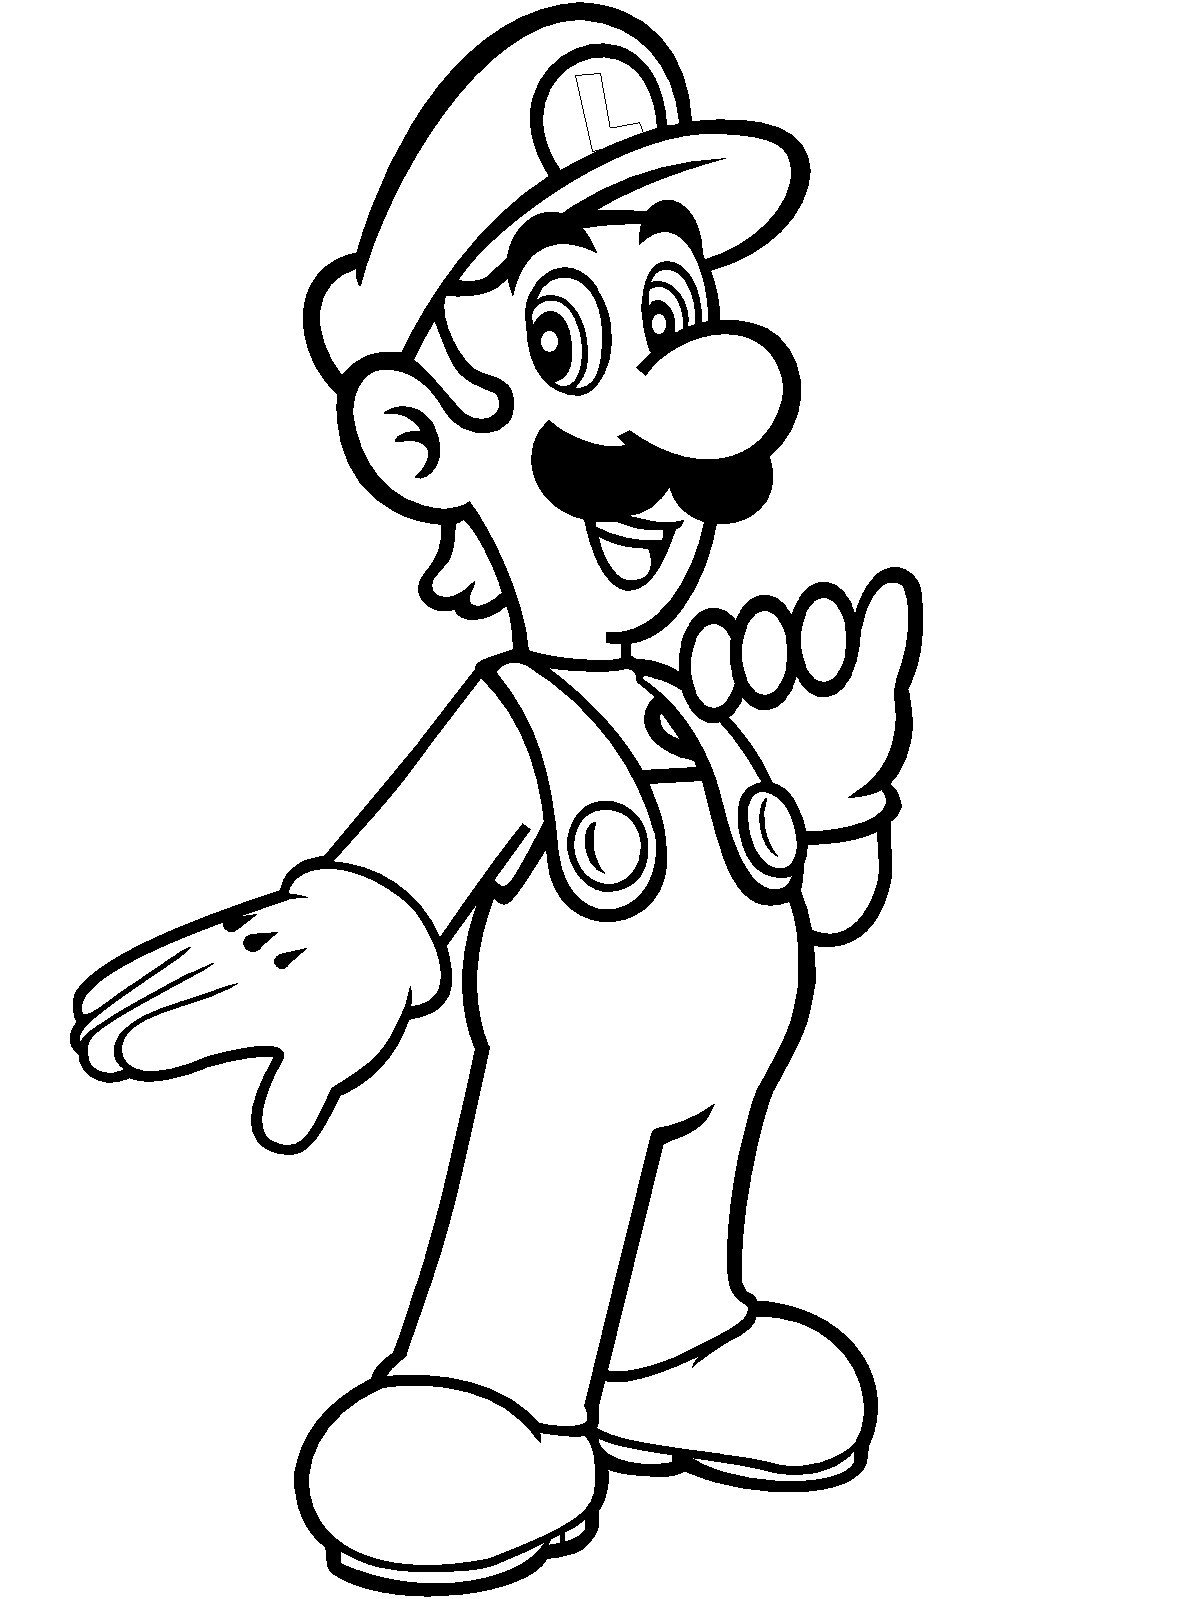 Luigi from Mario Bros coloring page